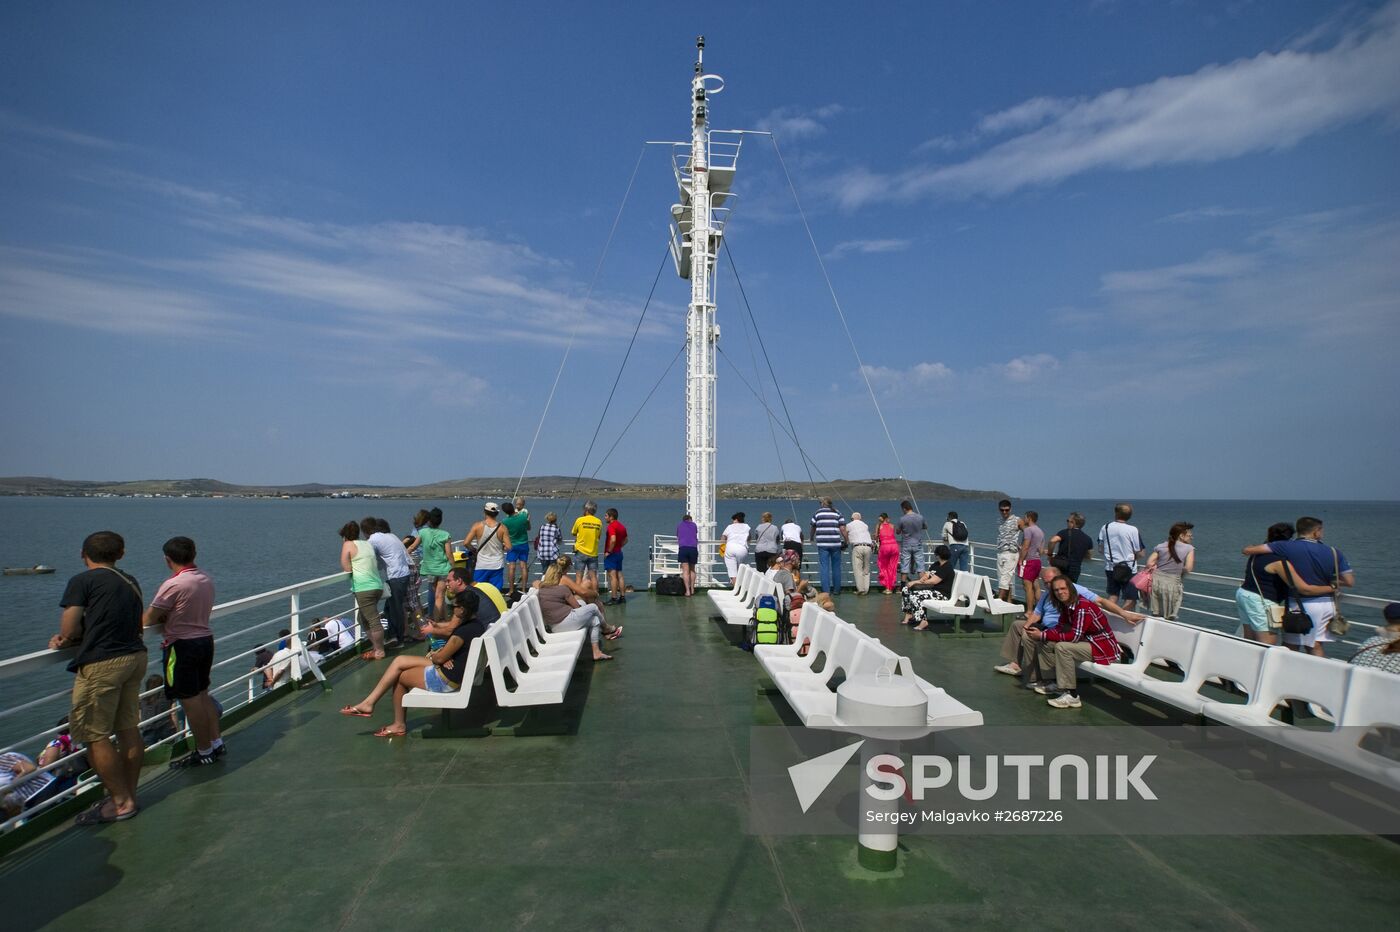 Kerch Strait ferry in Crimea